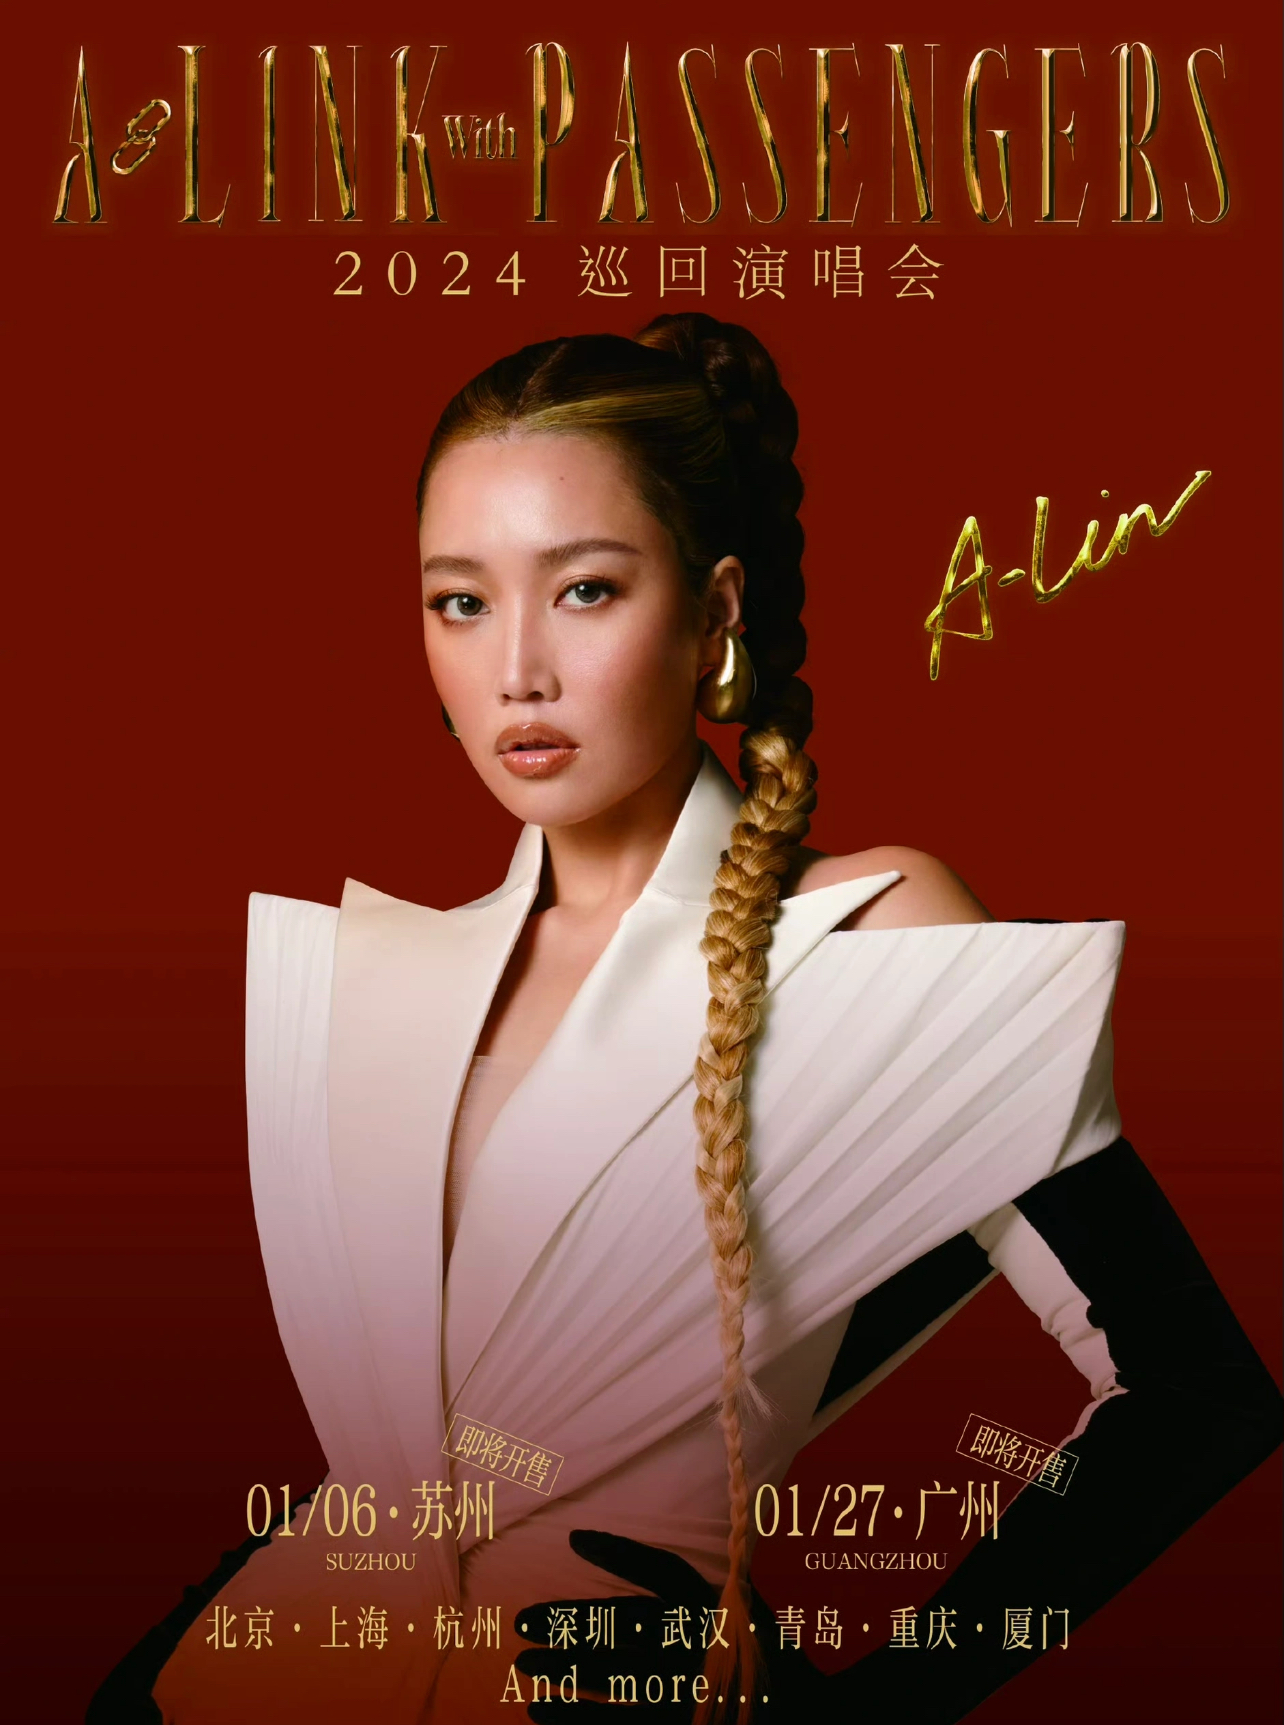 [深圳]2024 黄丽玲A-Lin [A-LINK with PASSENGERS] 演唱会-深圳站